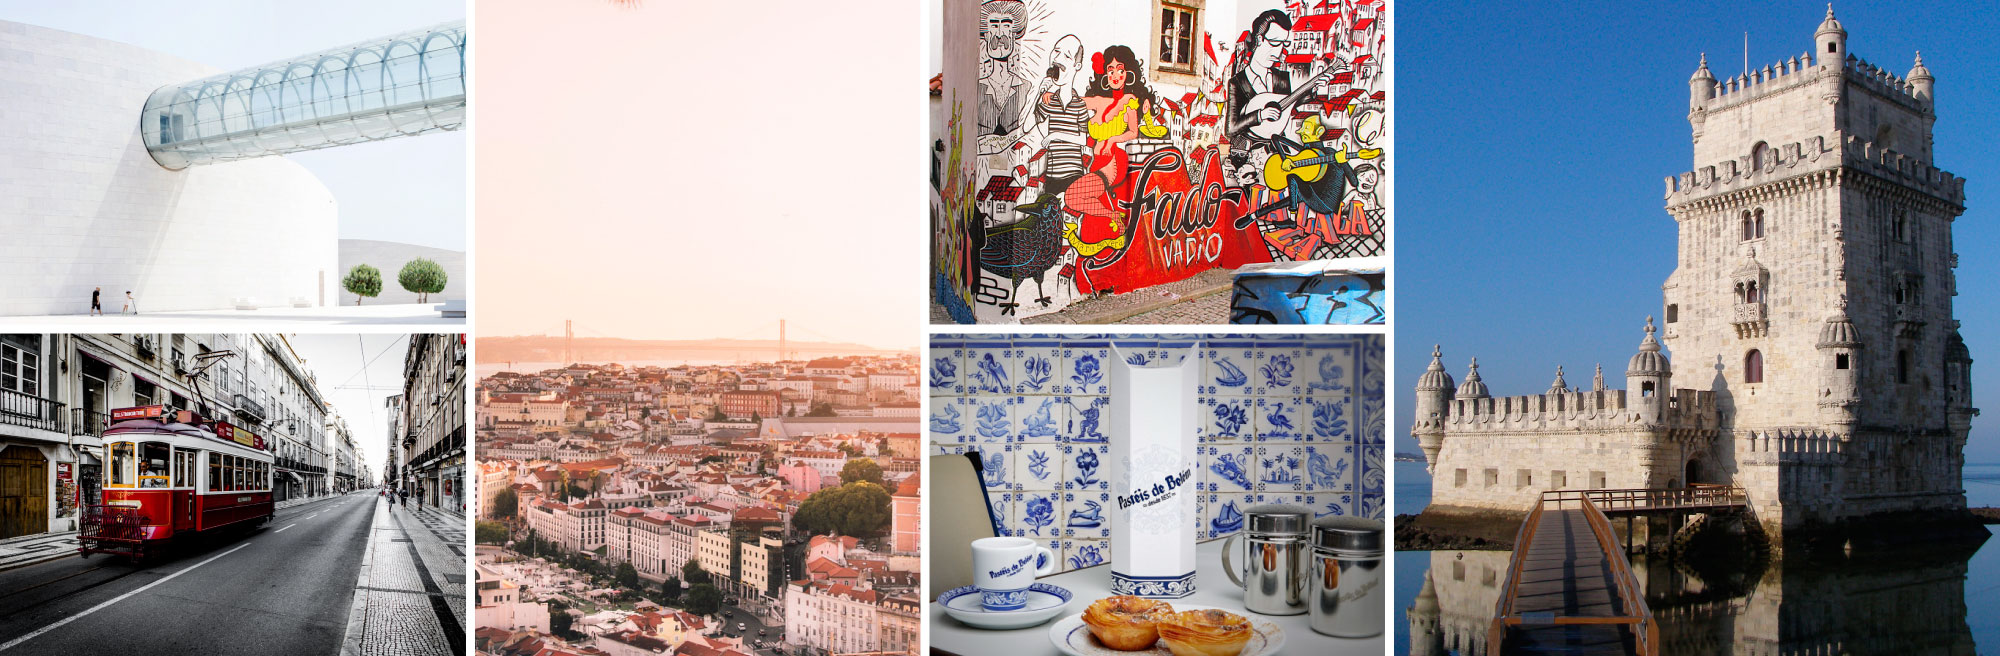 Lisboa a cidade + cool da europa